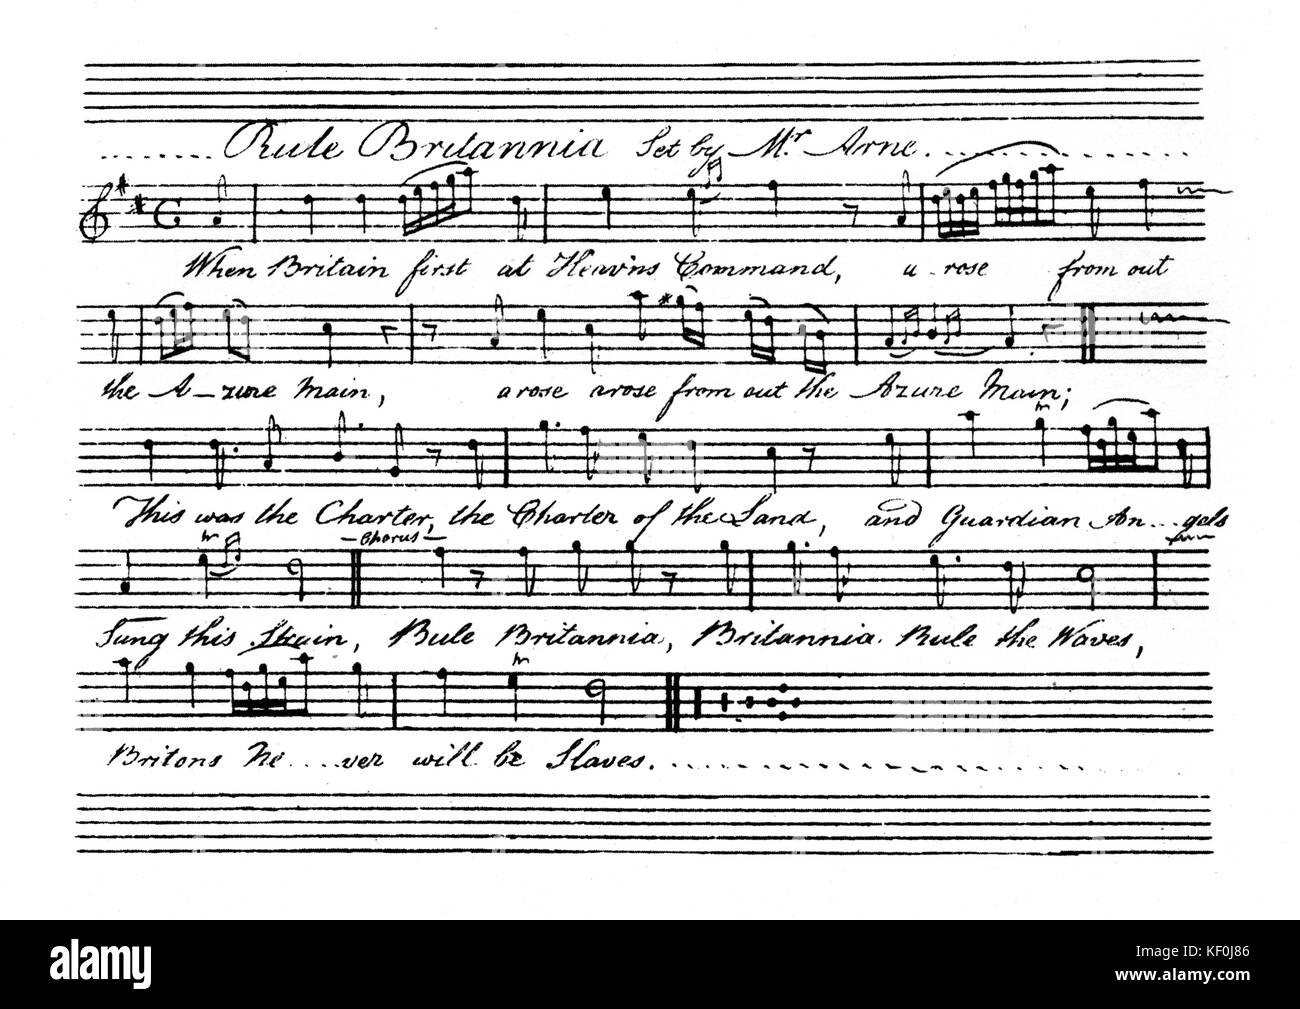 Rule Britannia - erster Vers. die Worte von James Thomson - Musik von Thomas Augustine Arne, der sich für die "Masque von Alfred' 1740. um 1740. Englische Komponist, 28. Mai 1710 - 5. März 1778 Stockfoto